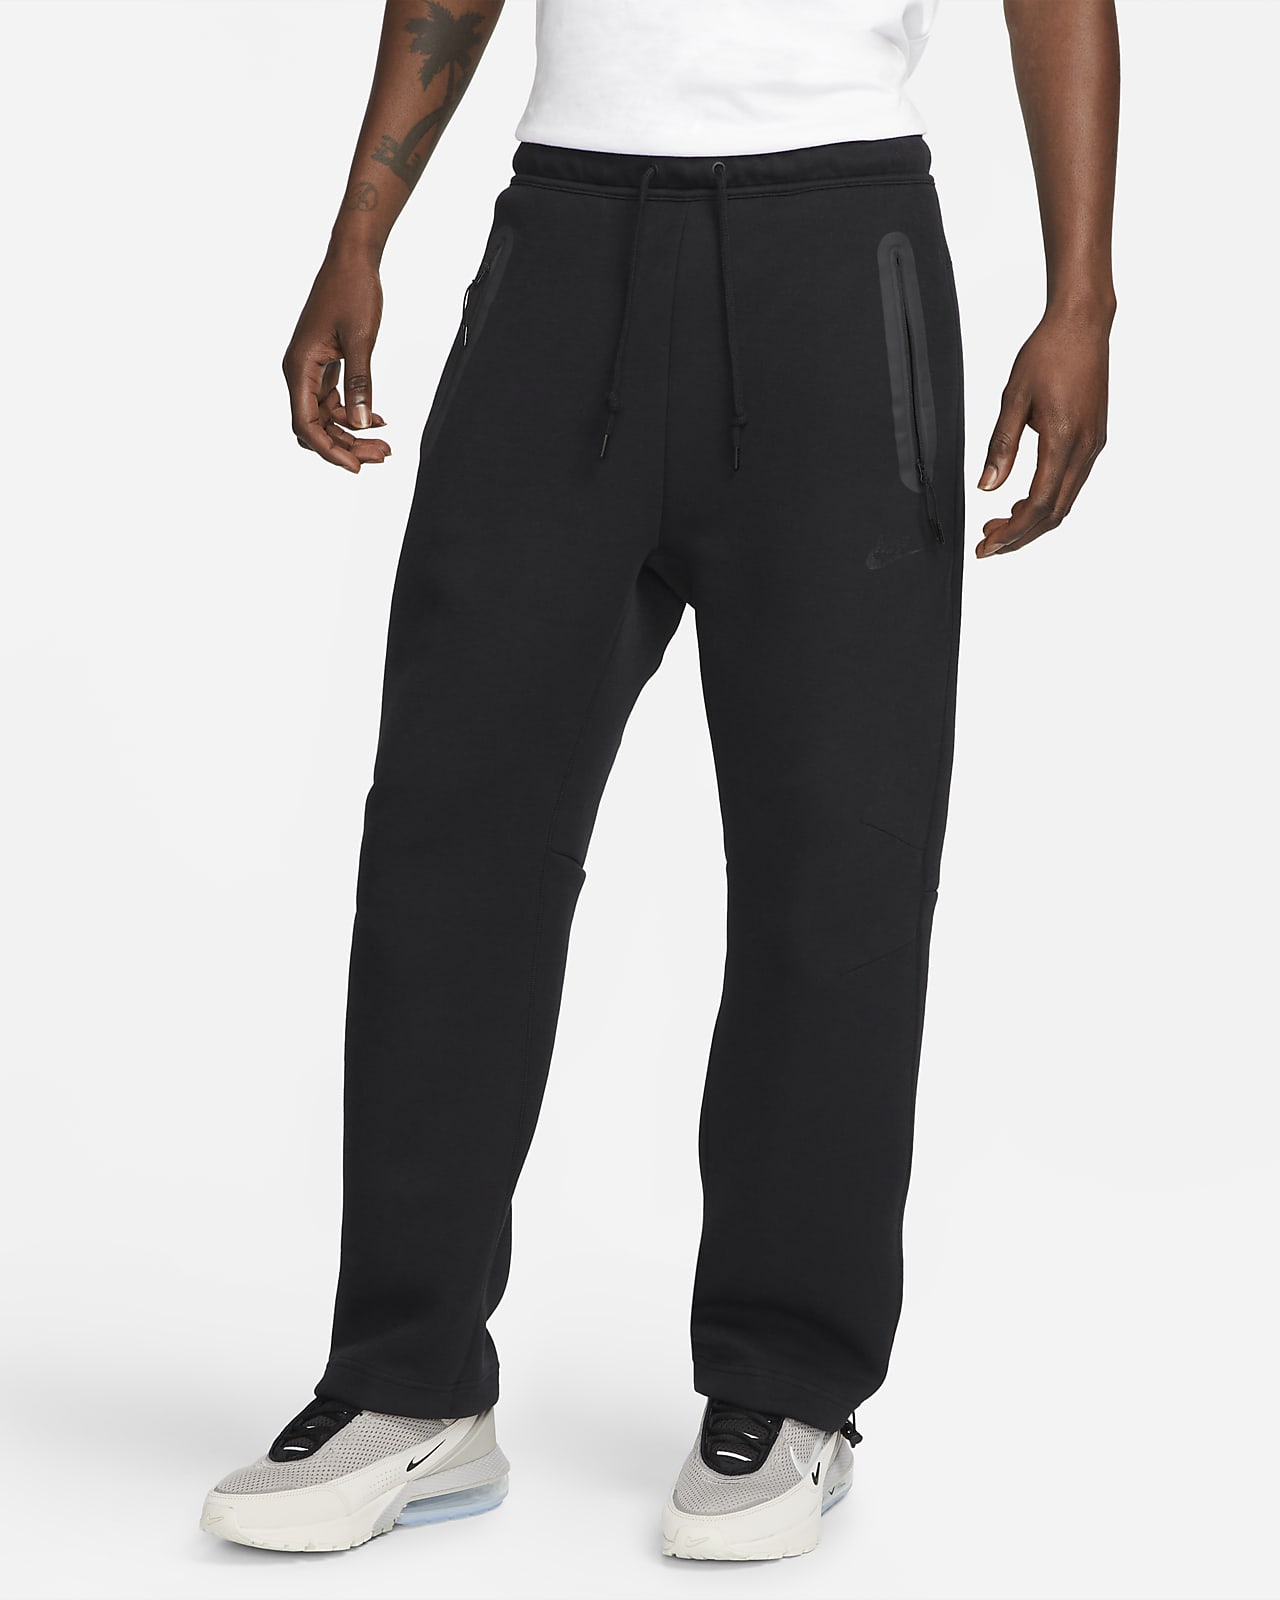 Nike Sportswear Fleece-sweatpants med åben kant til Nike DK